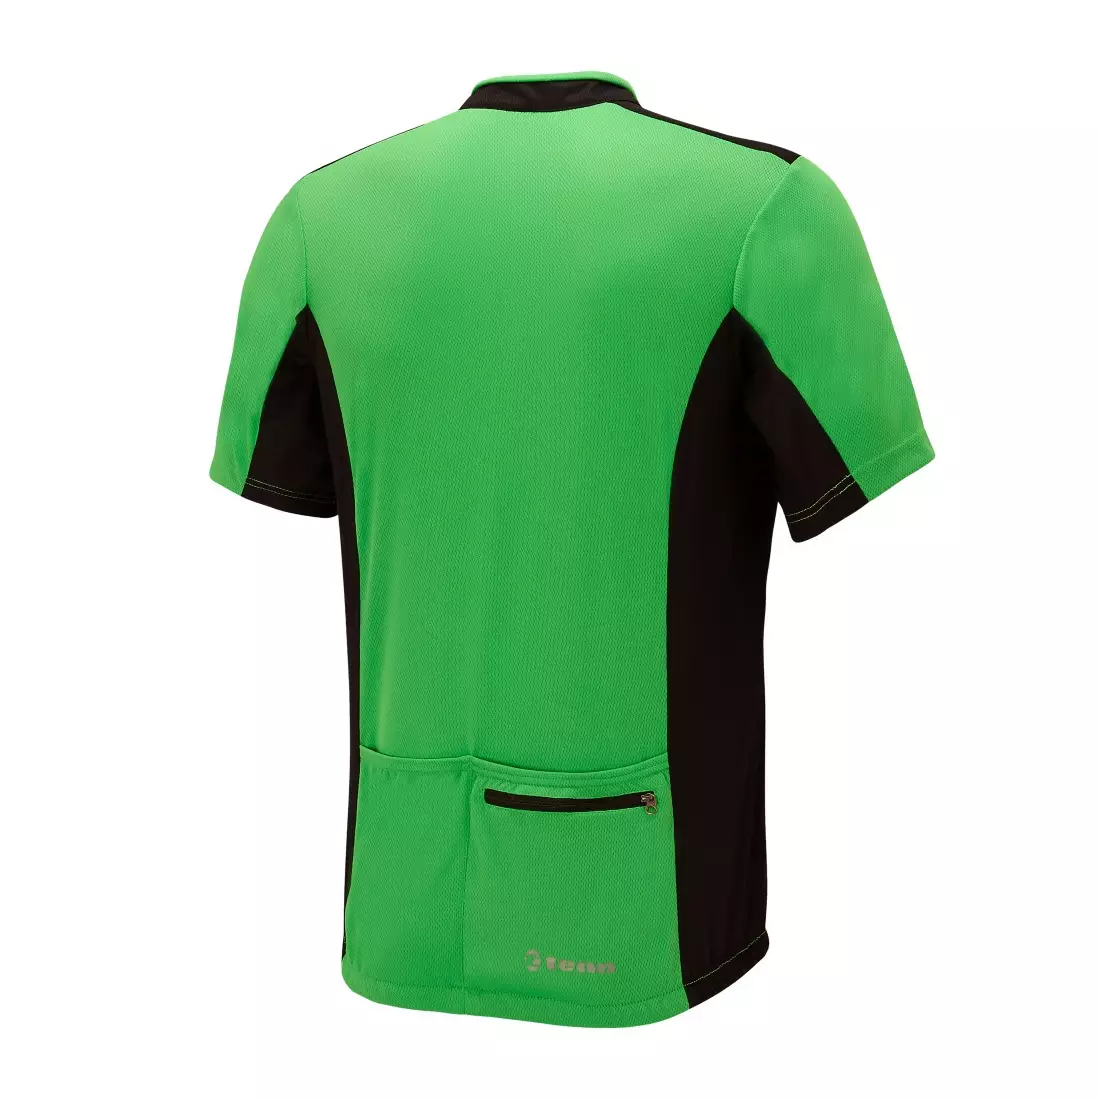 TENN OUTDOORS COOLFLO férfi kerékpáros mez zöld és fekete színben